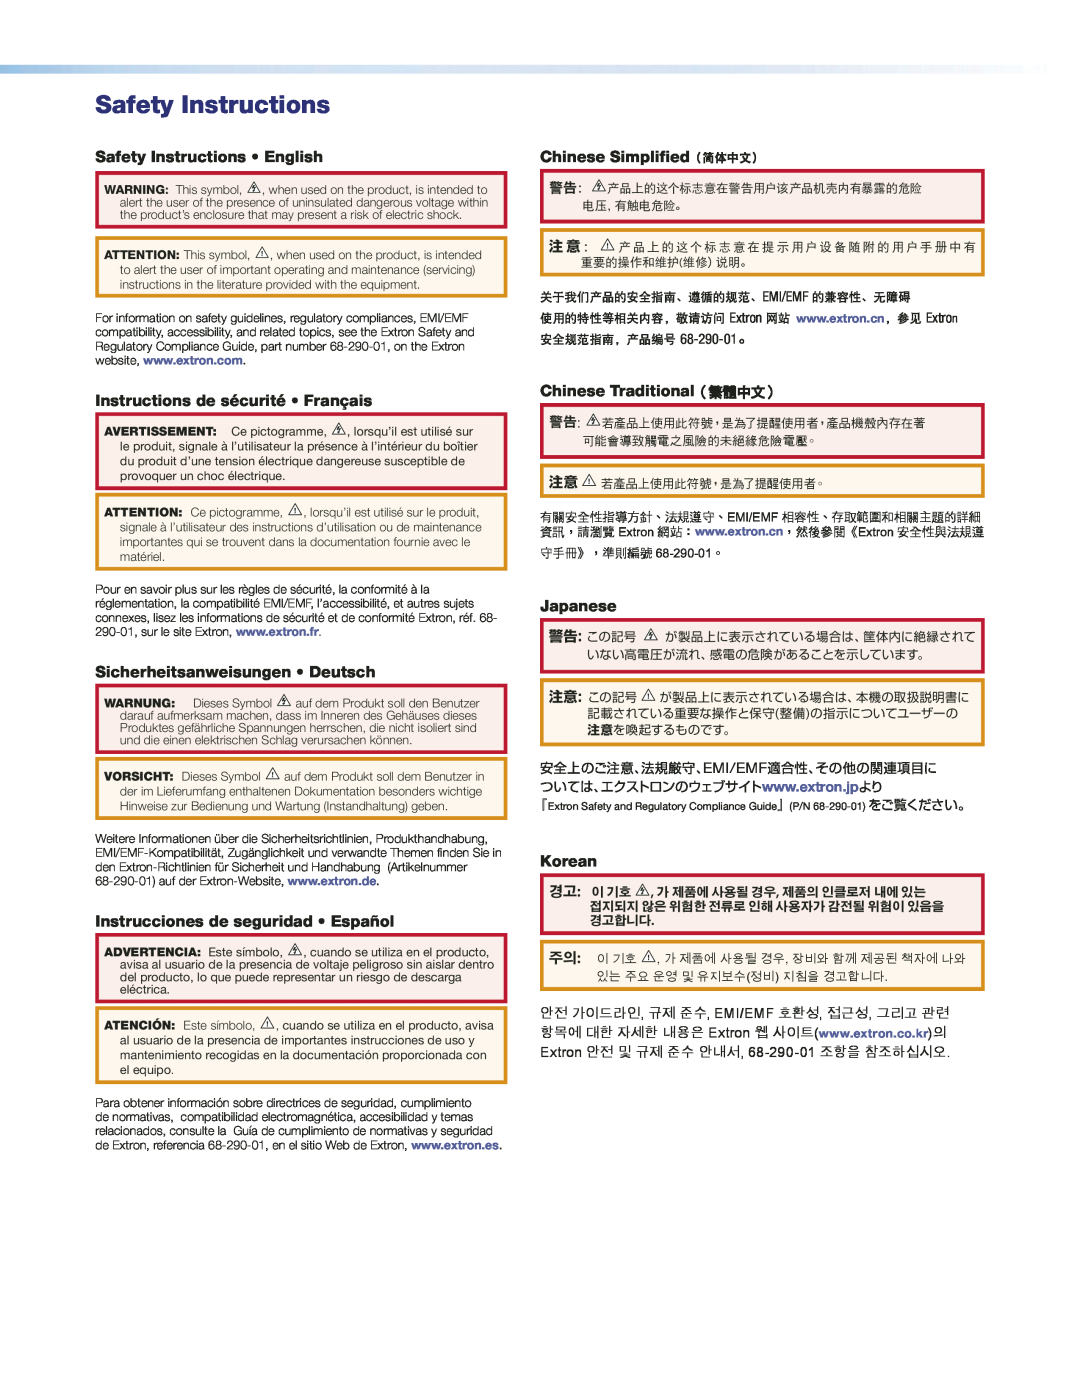 Extron electronic MTP 15HD Safety Instructions English, Instructions de sécurité Français, Chinese Simplified（简体中文） 